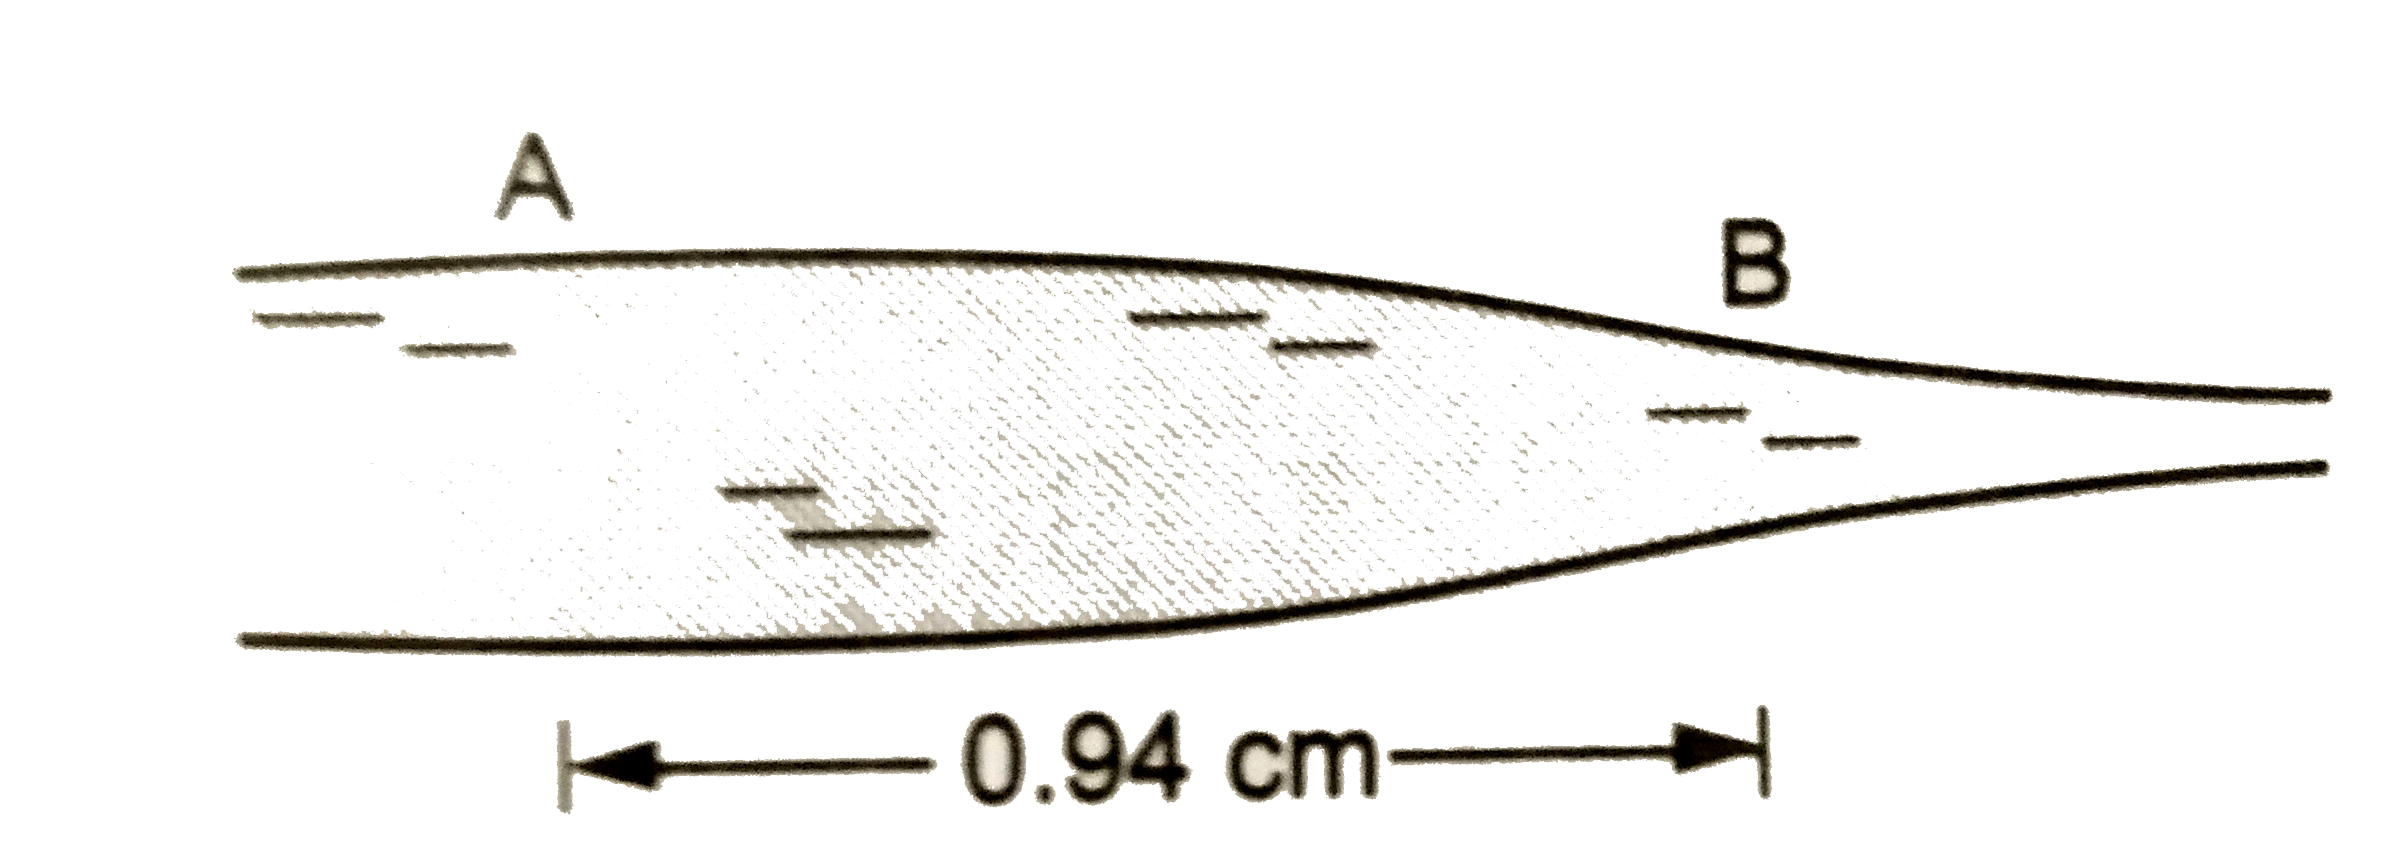 असमान अनुप्रस्थ काट वाली एक क्षैतिज अक्ष वाली नली से पानी बाह रहा है ( चित्र 25.E1 )  A तथा B पर नली कि अनुप्रस्थ काटो के क्षेत्रफल क्रमशः  4